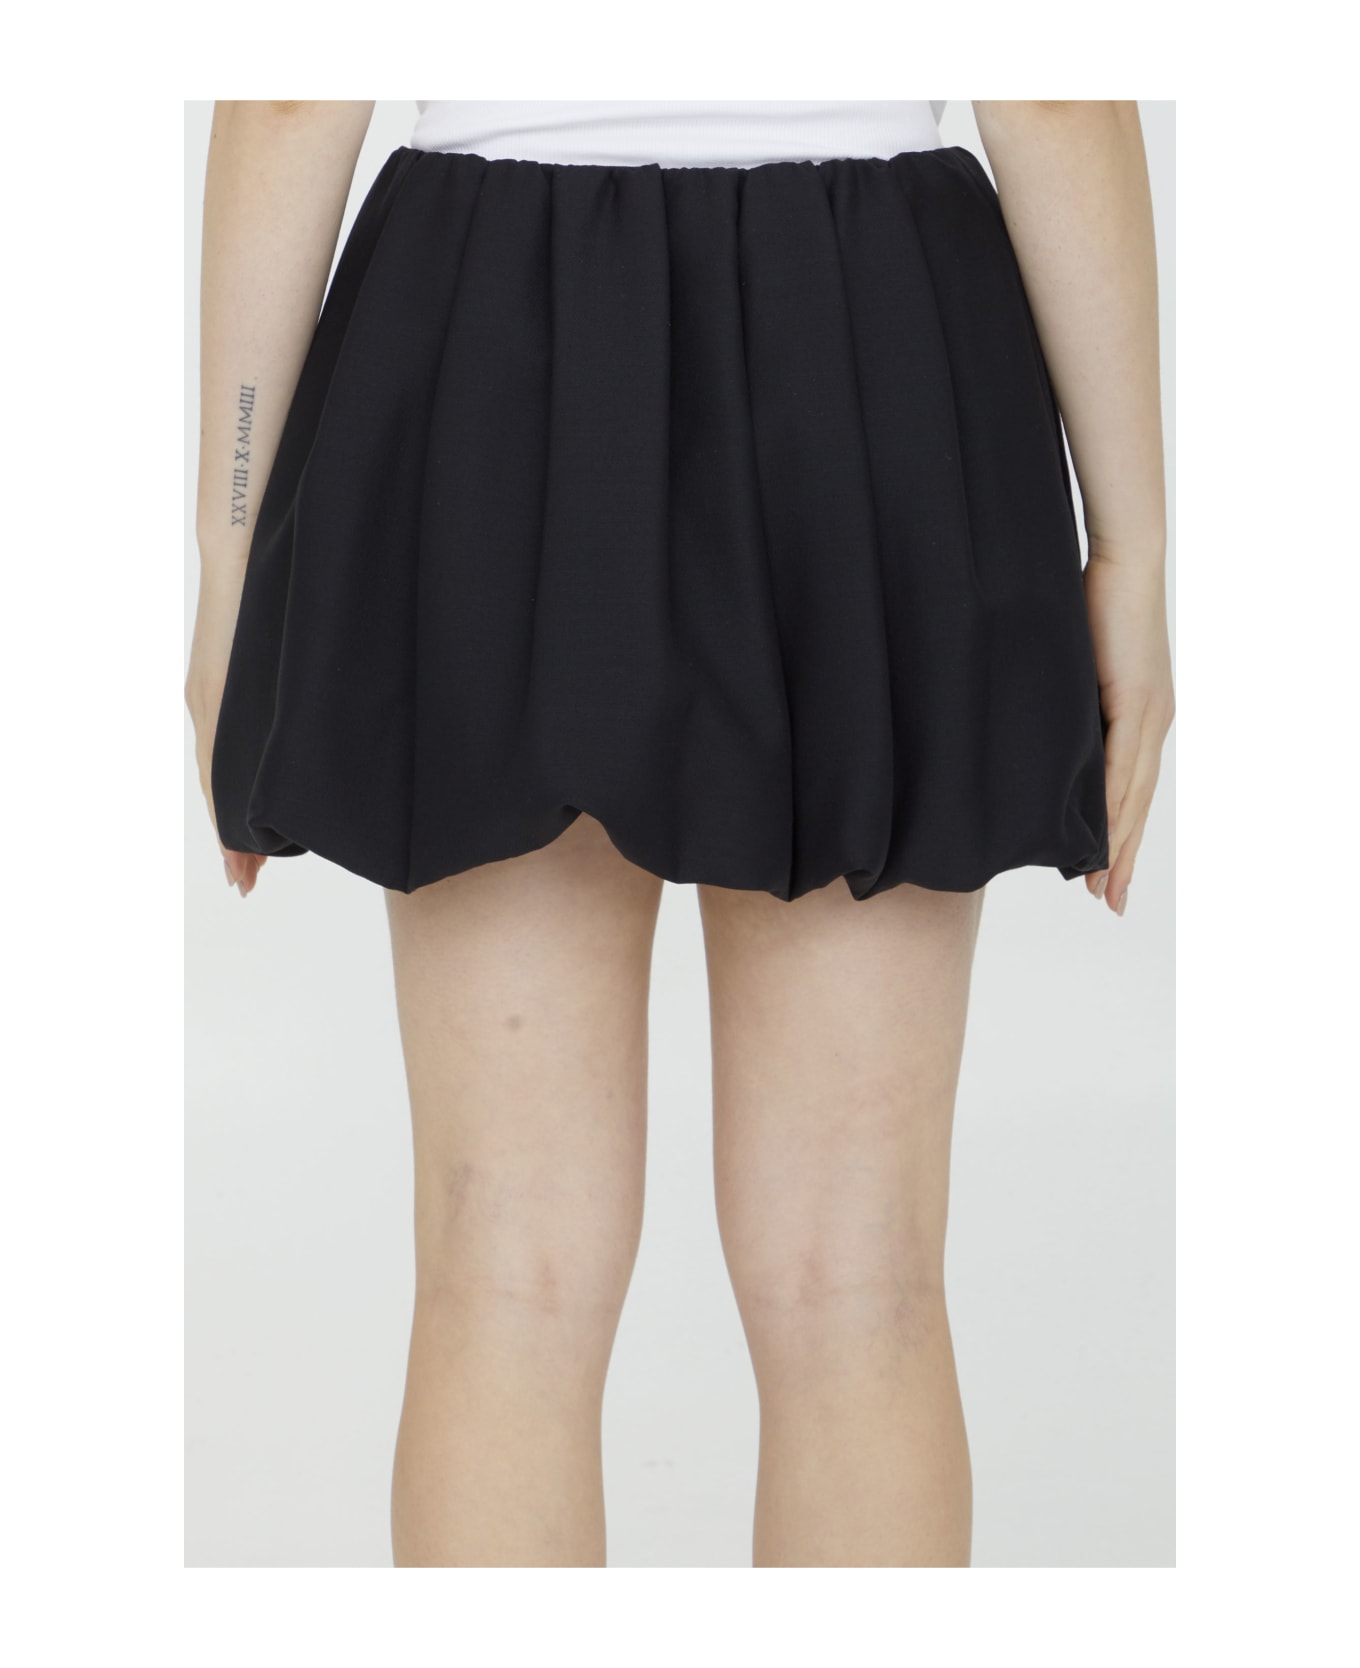 Valentino Garavani Crepe Couture Miniskirt - Black